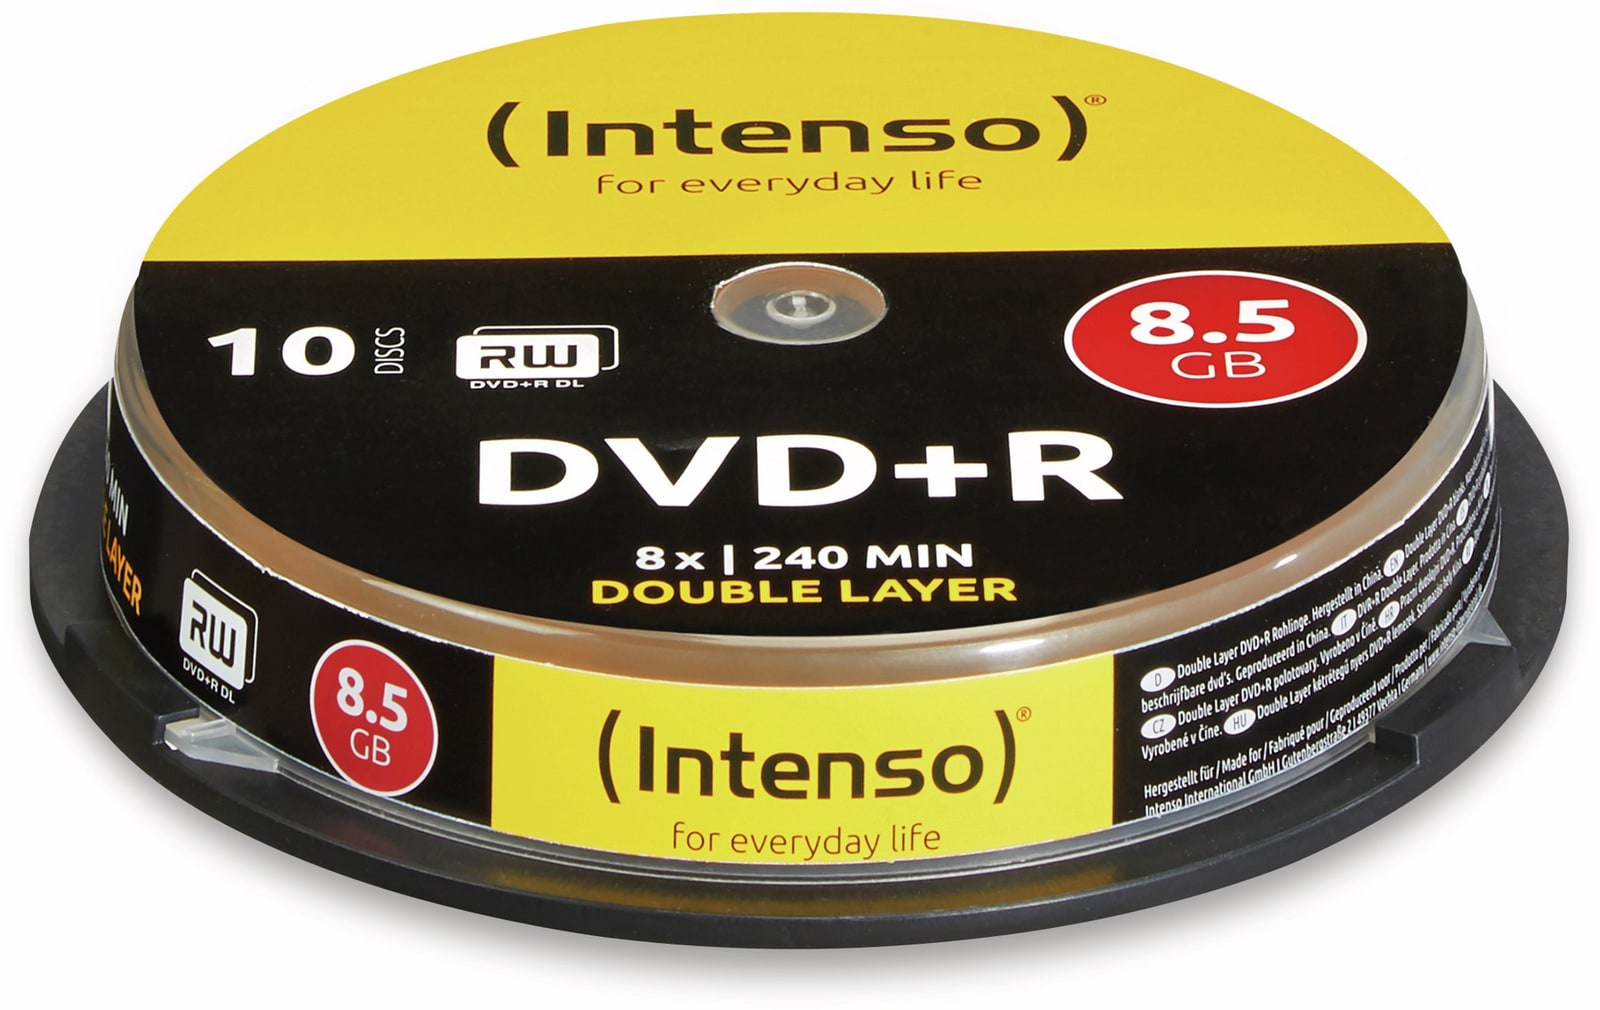 INTENSO DVD+R Spindel (DoubleLayer), 10 Stück von Intenso